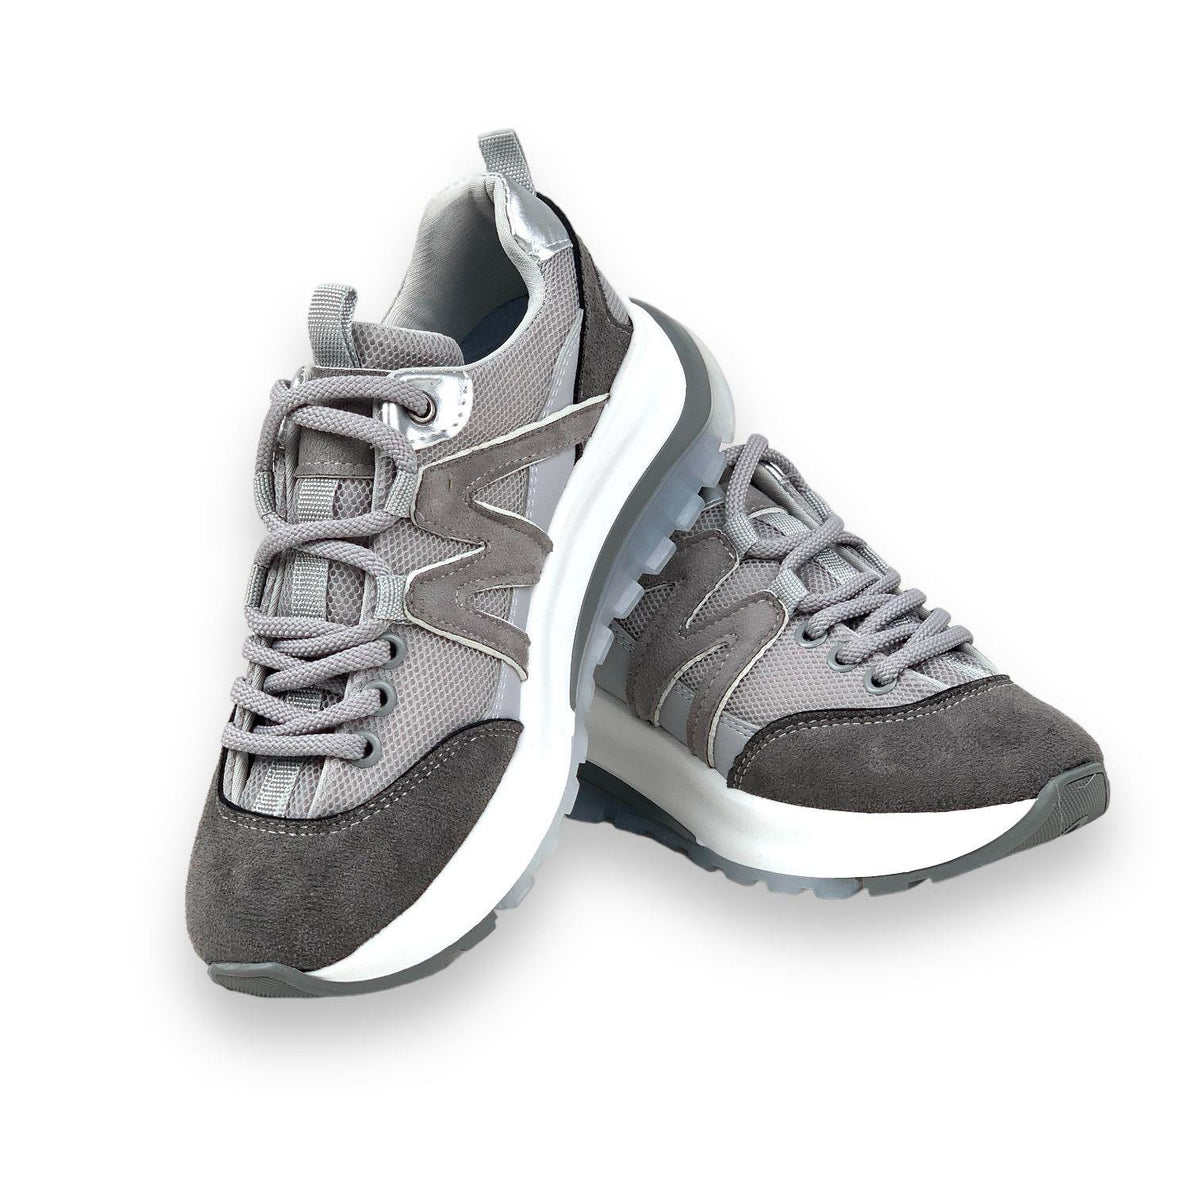 Women's Mafy Gray Comfort Sole Daily Walking Sneaker 4 Cm - STREETMODE™